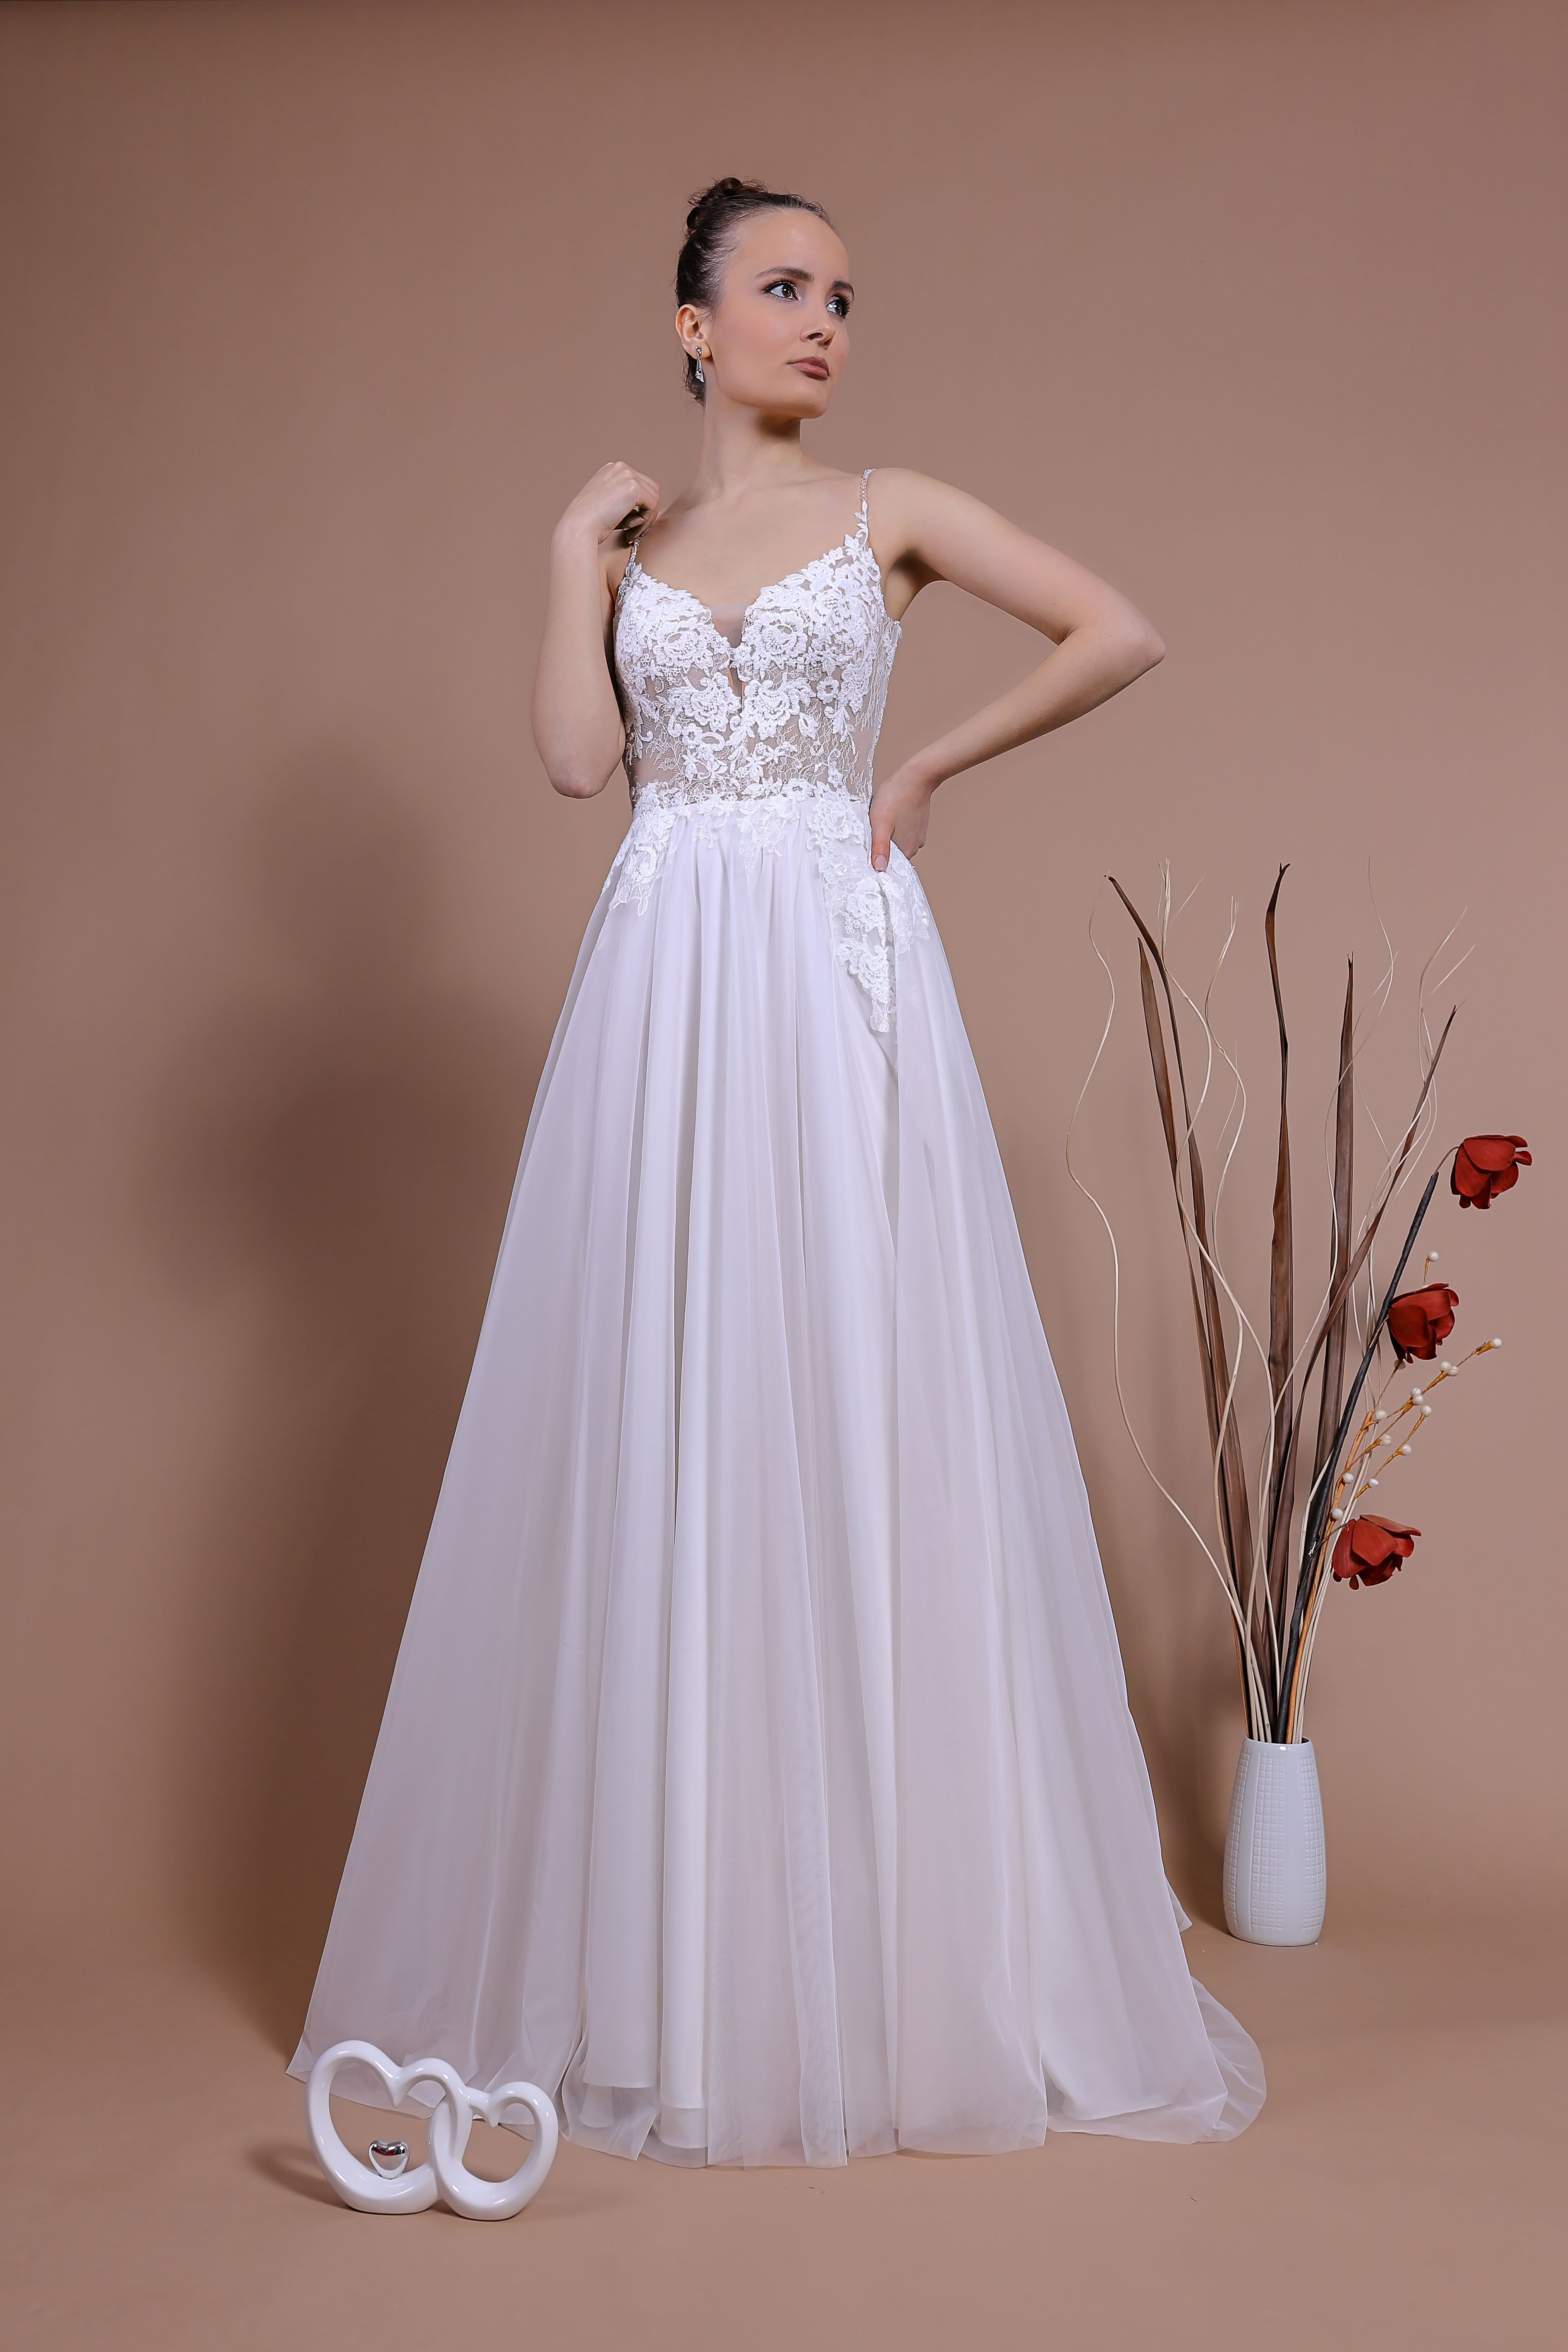 Schantal Brautkleid aus der Kollektion „Traum“, Modell 14160.